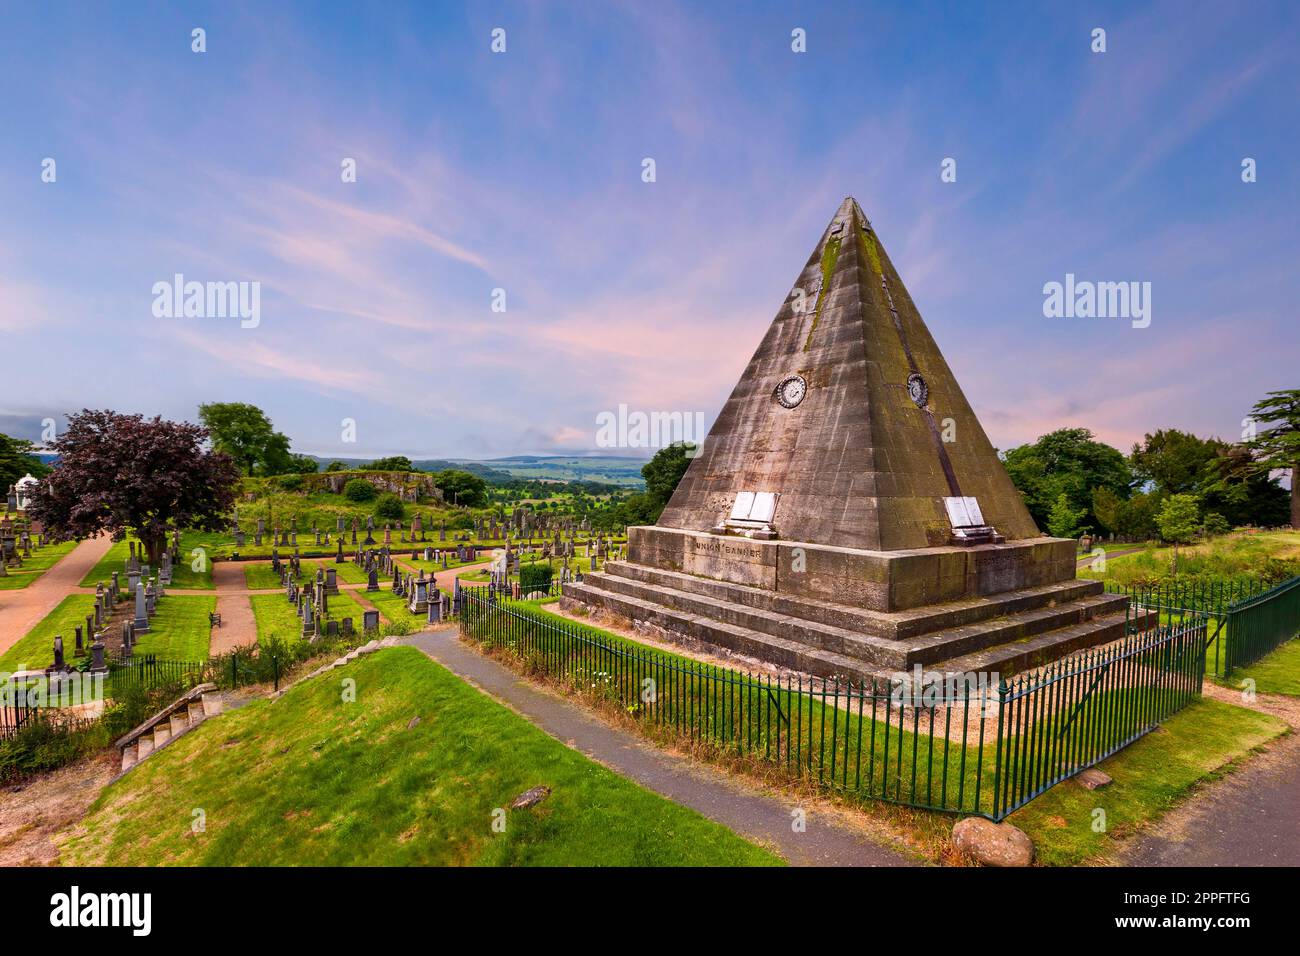 The Star Pyramid près du château de Stirling, Écosse, Royaume-Uni. La Pyramide étoile construite en 1863 par William Drummond. Banque D'Images